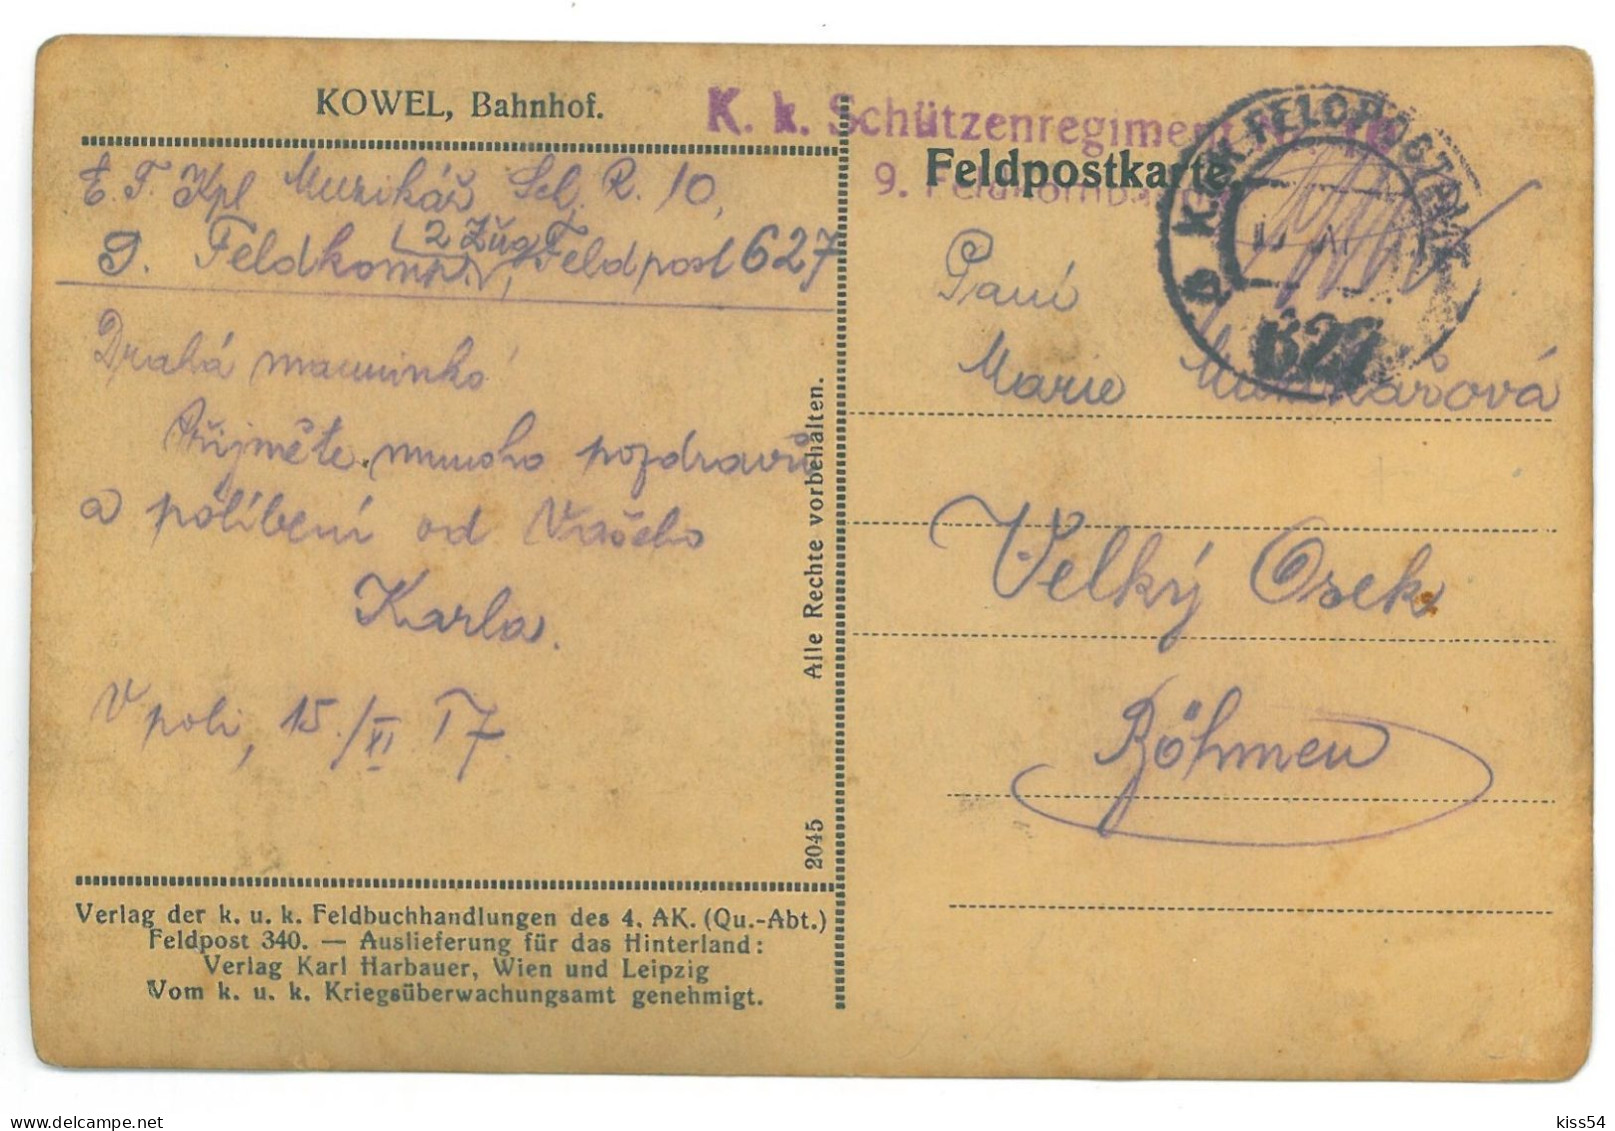 UK - 25197 KOWEL, Railway Station, Ukraine - Old Postcard, CENSOR - Used - 1917 - Ukraine